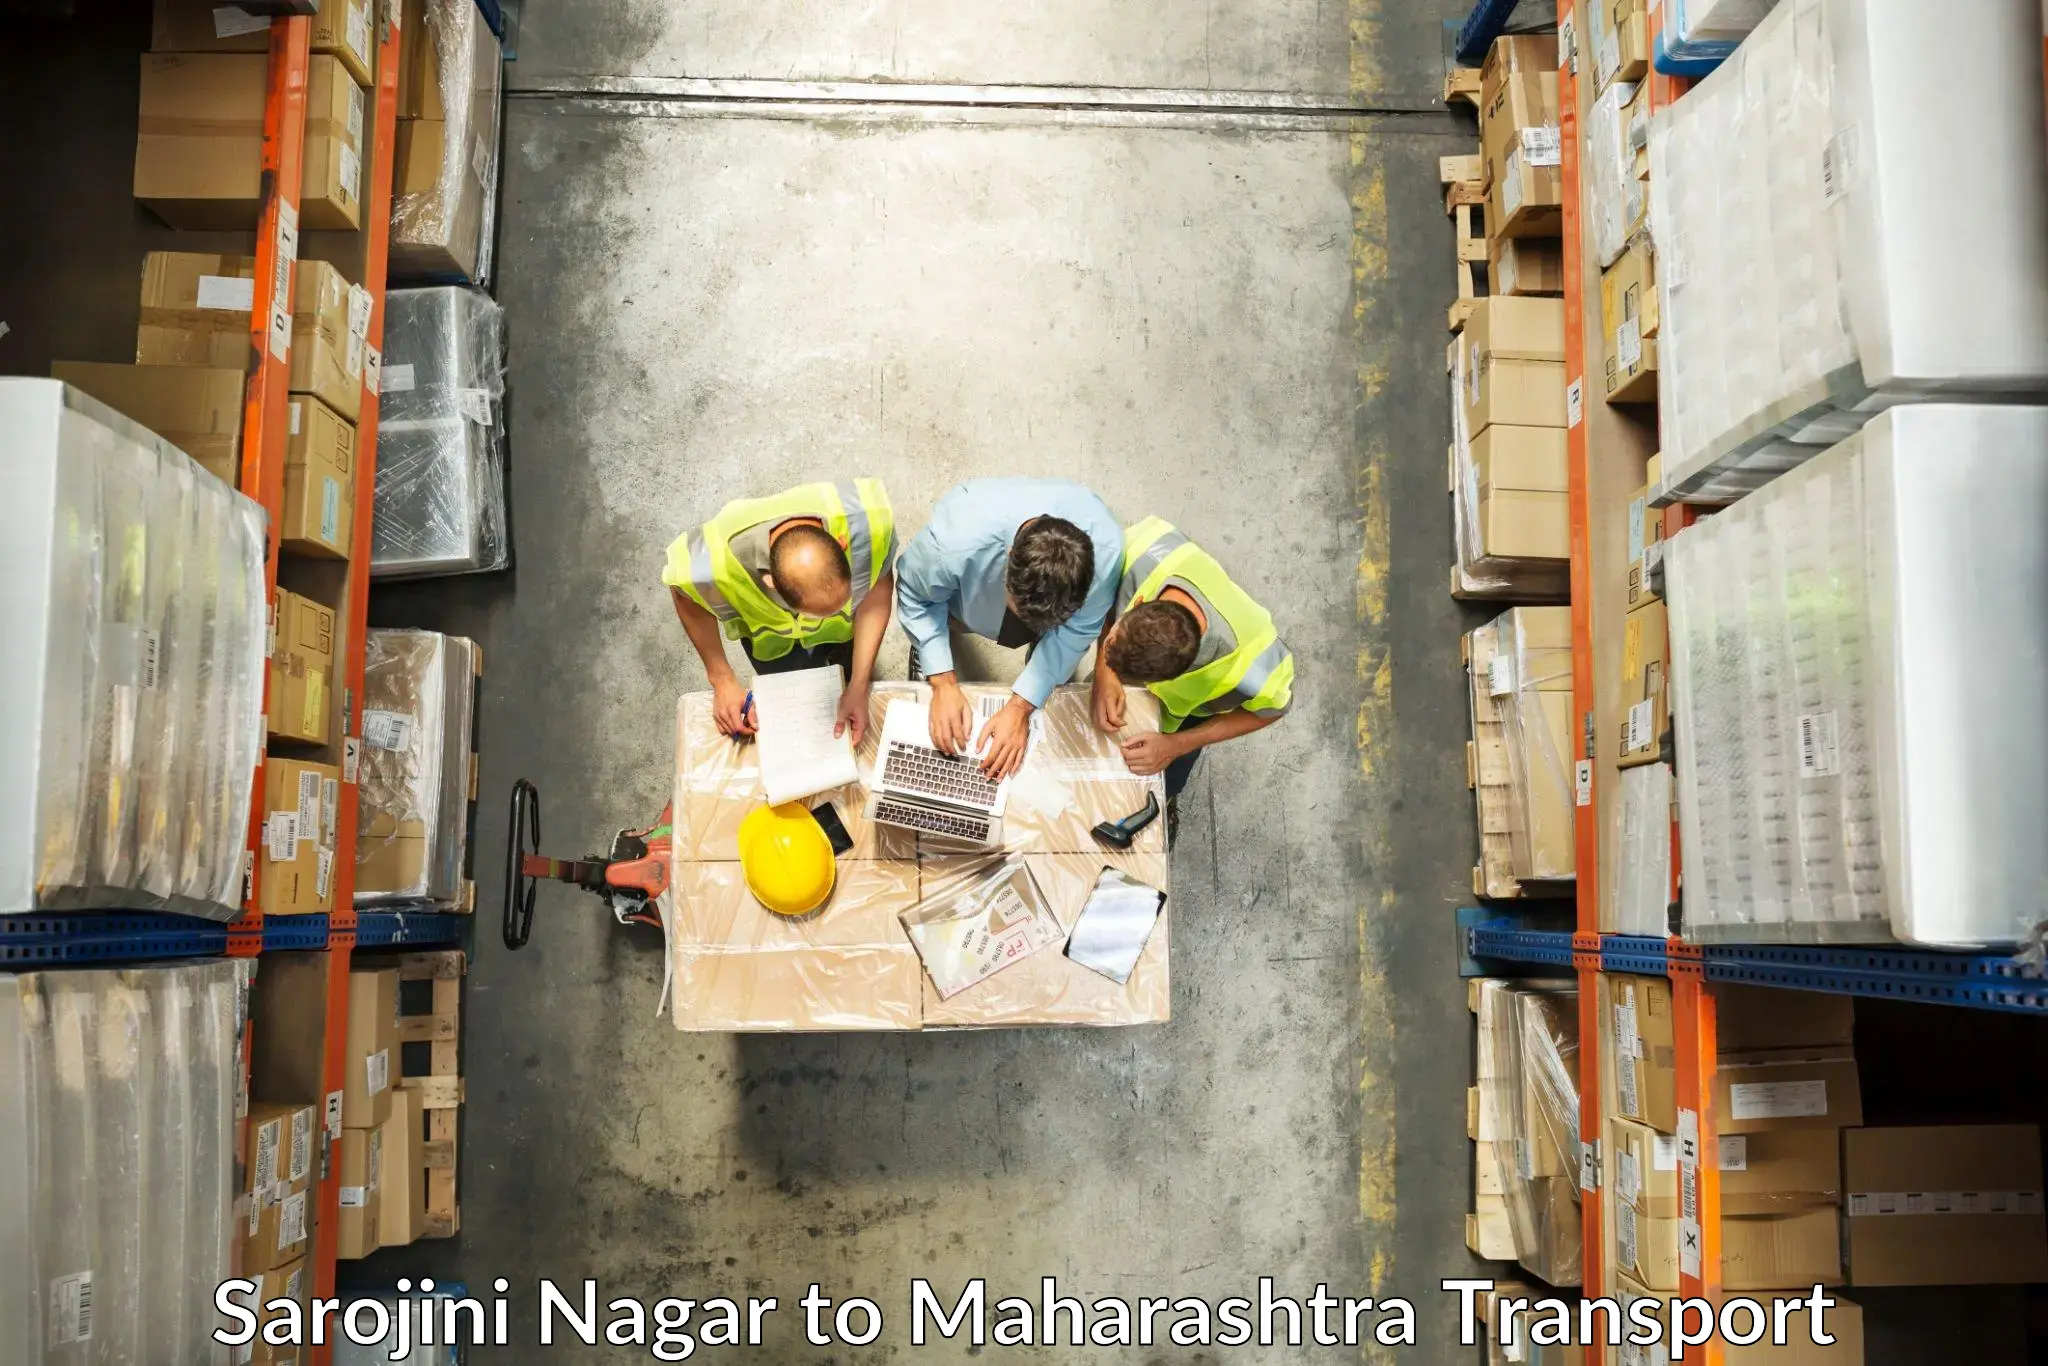 Container transport service Sarojini Nagar to Digras